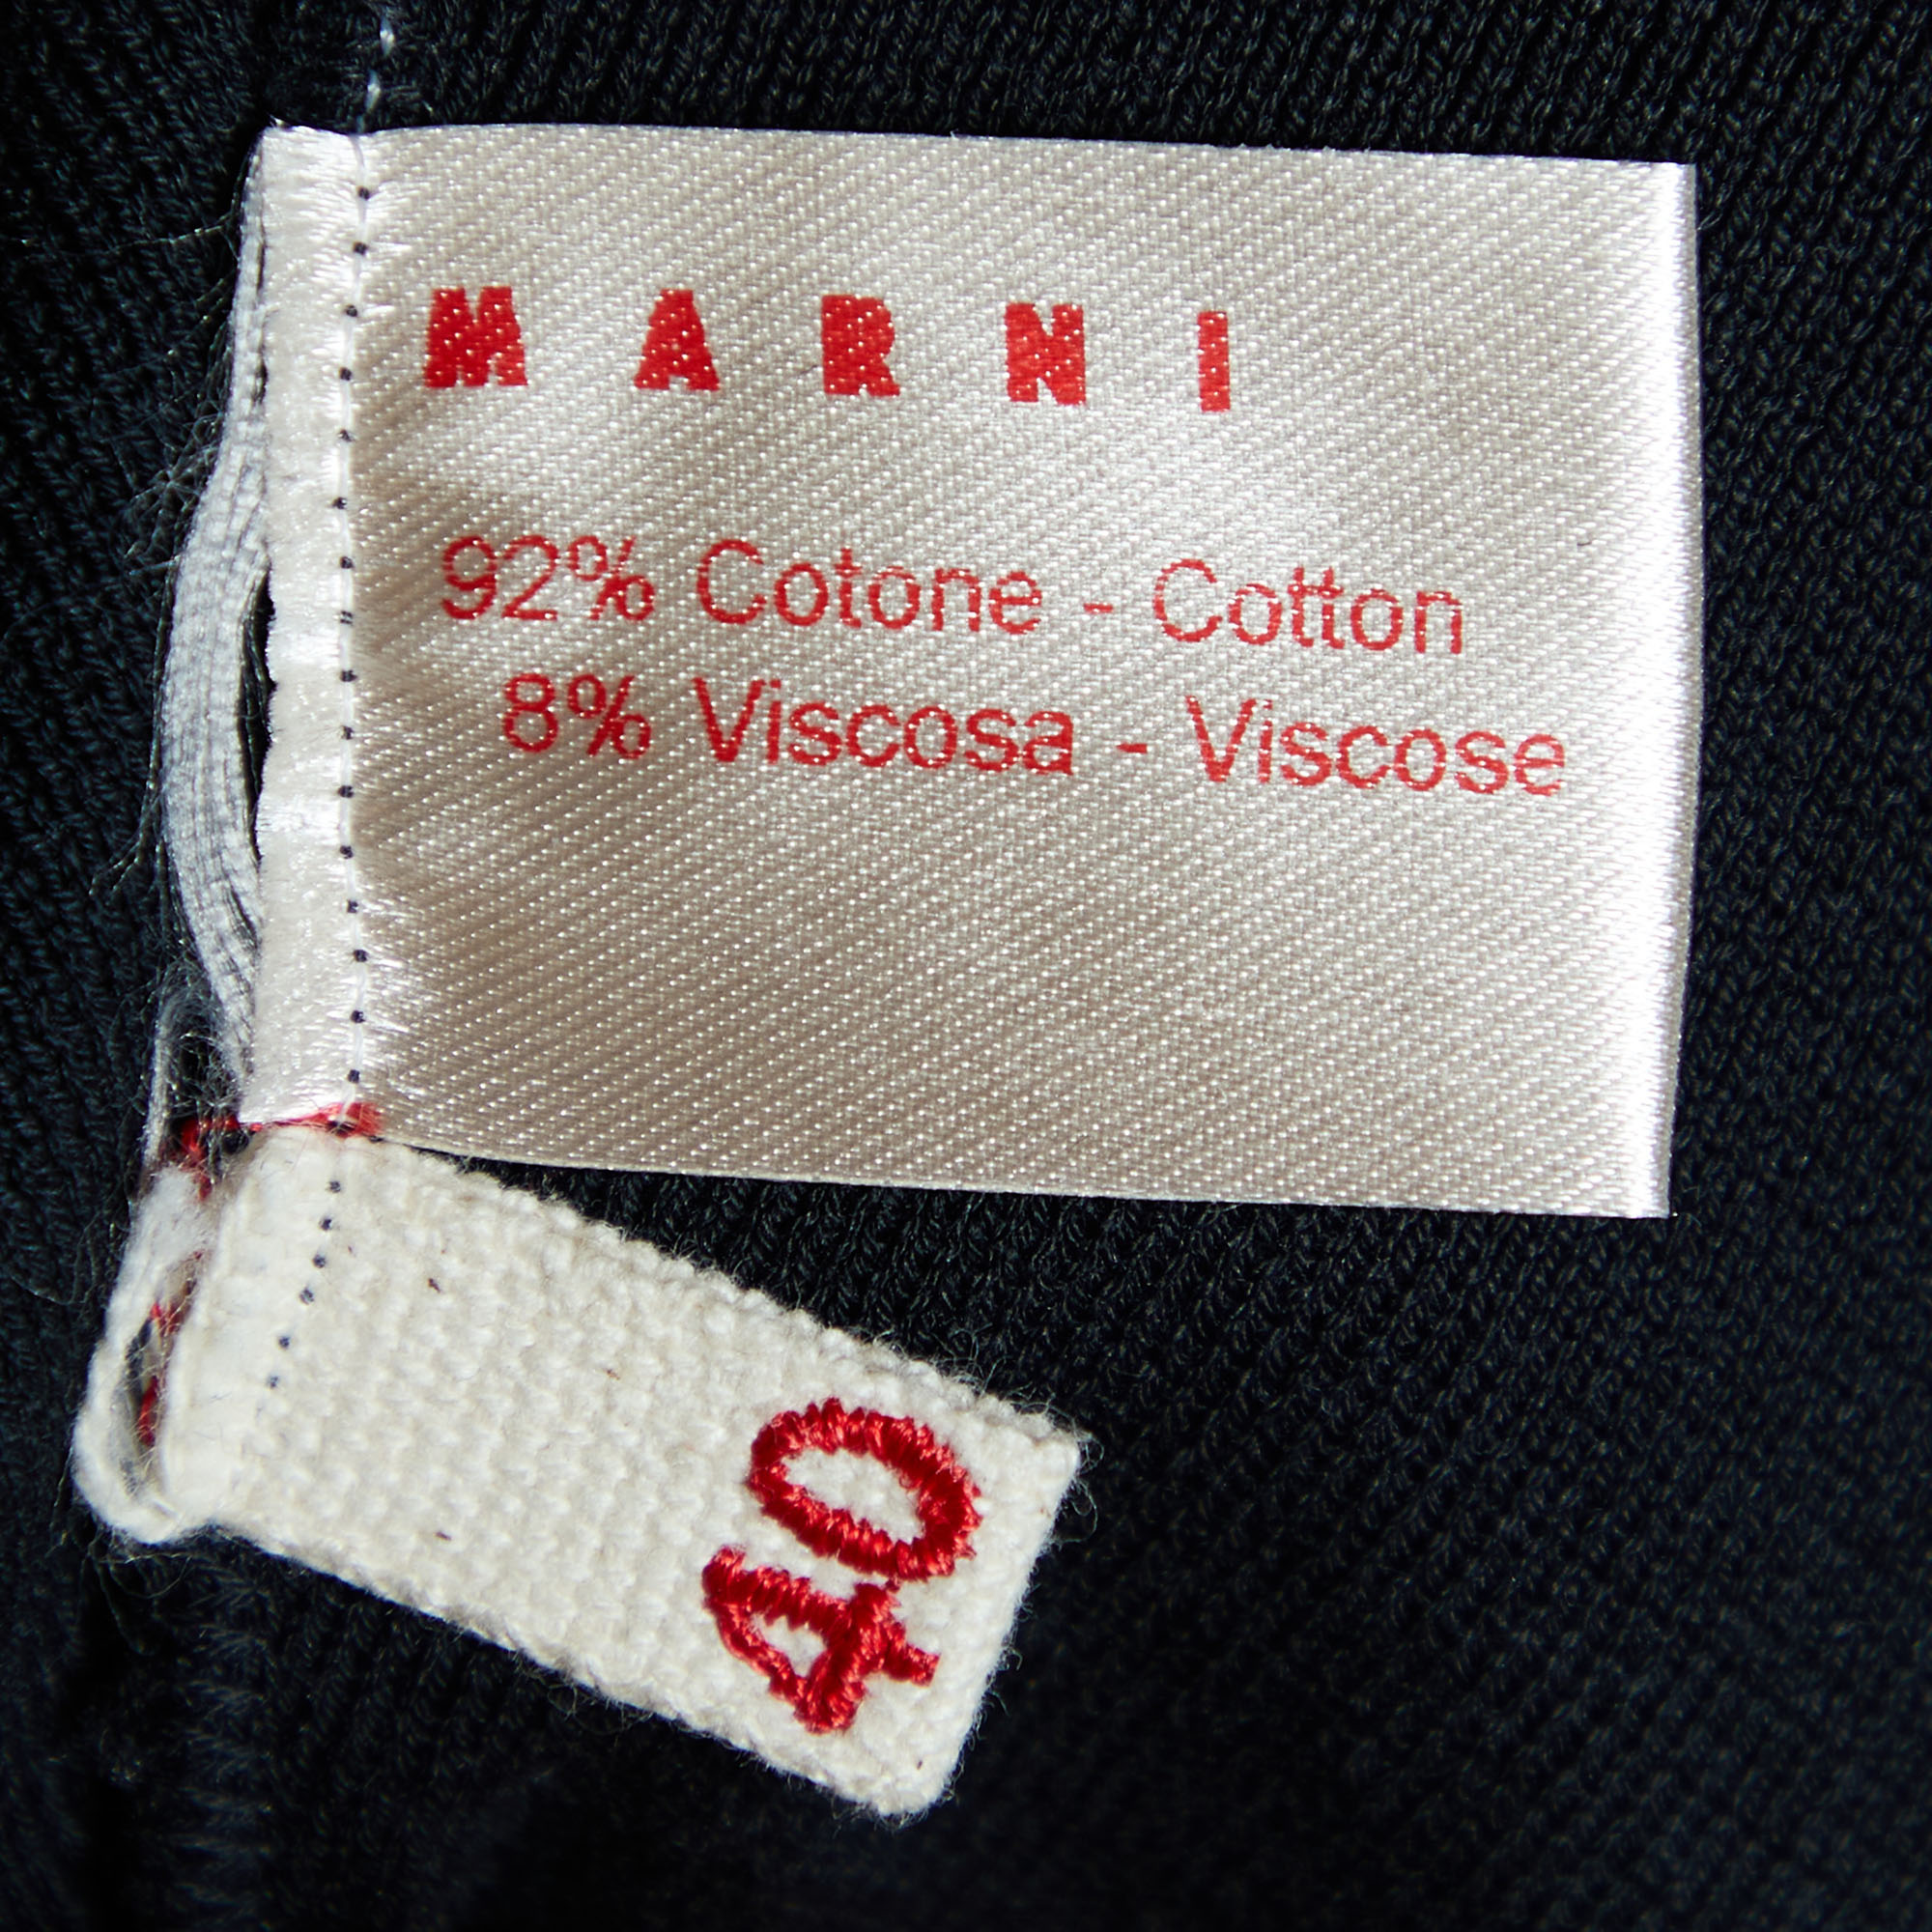 Marni Black Cotton Knit Capri Pants S